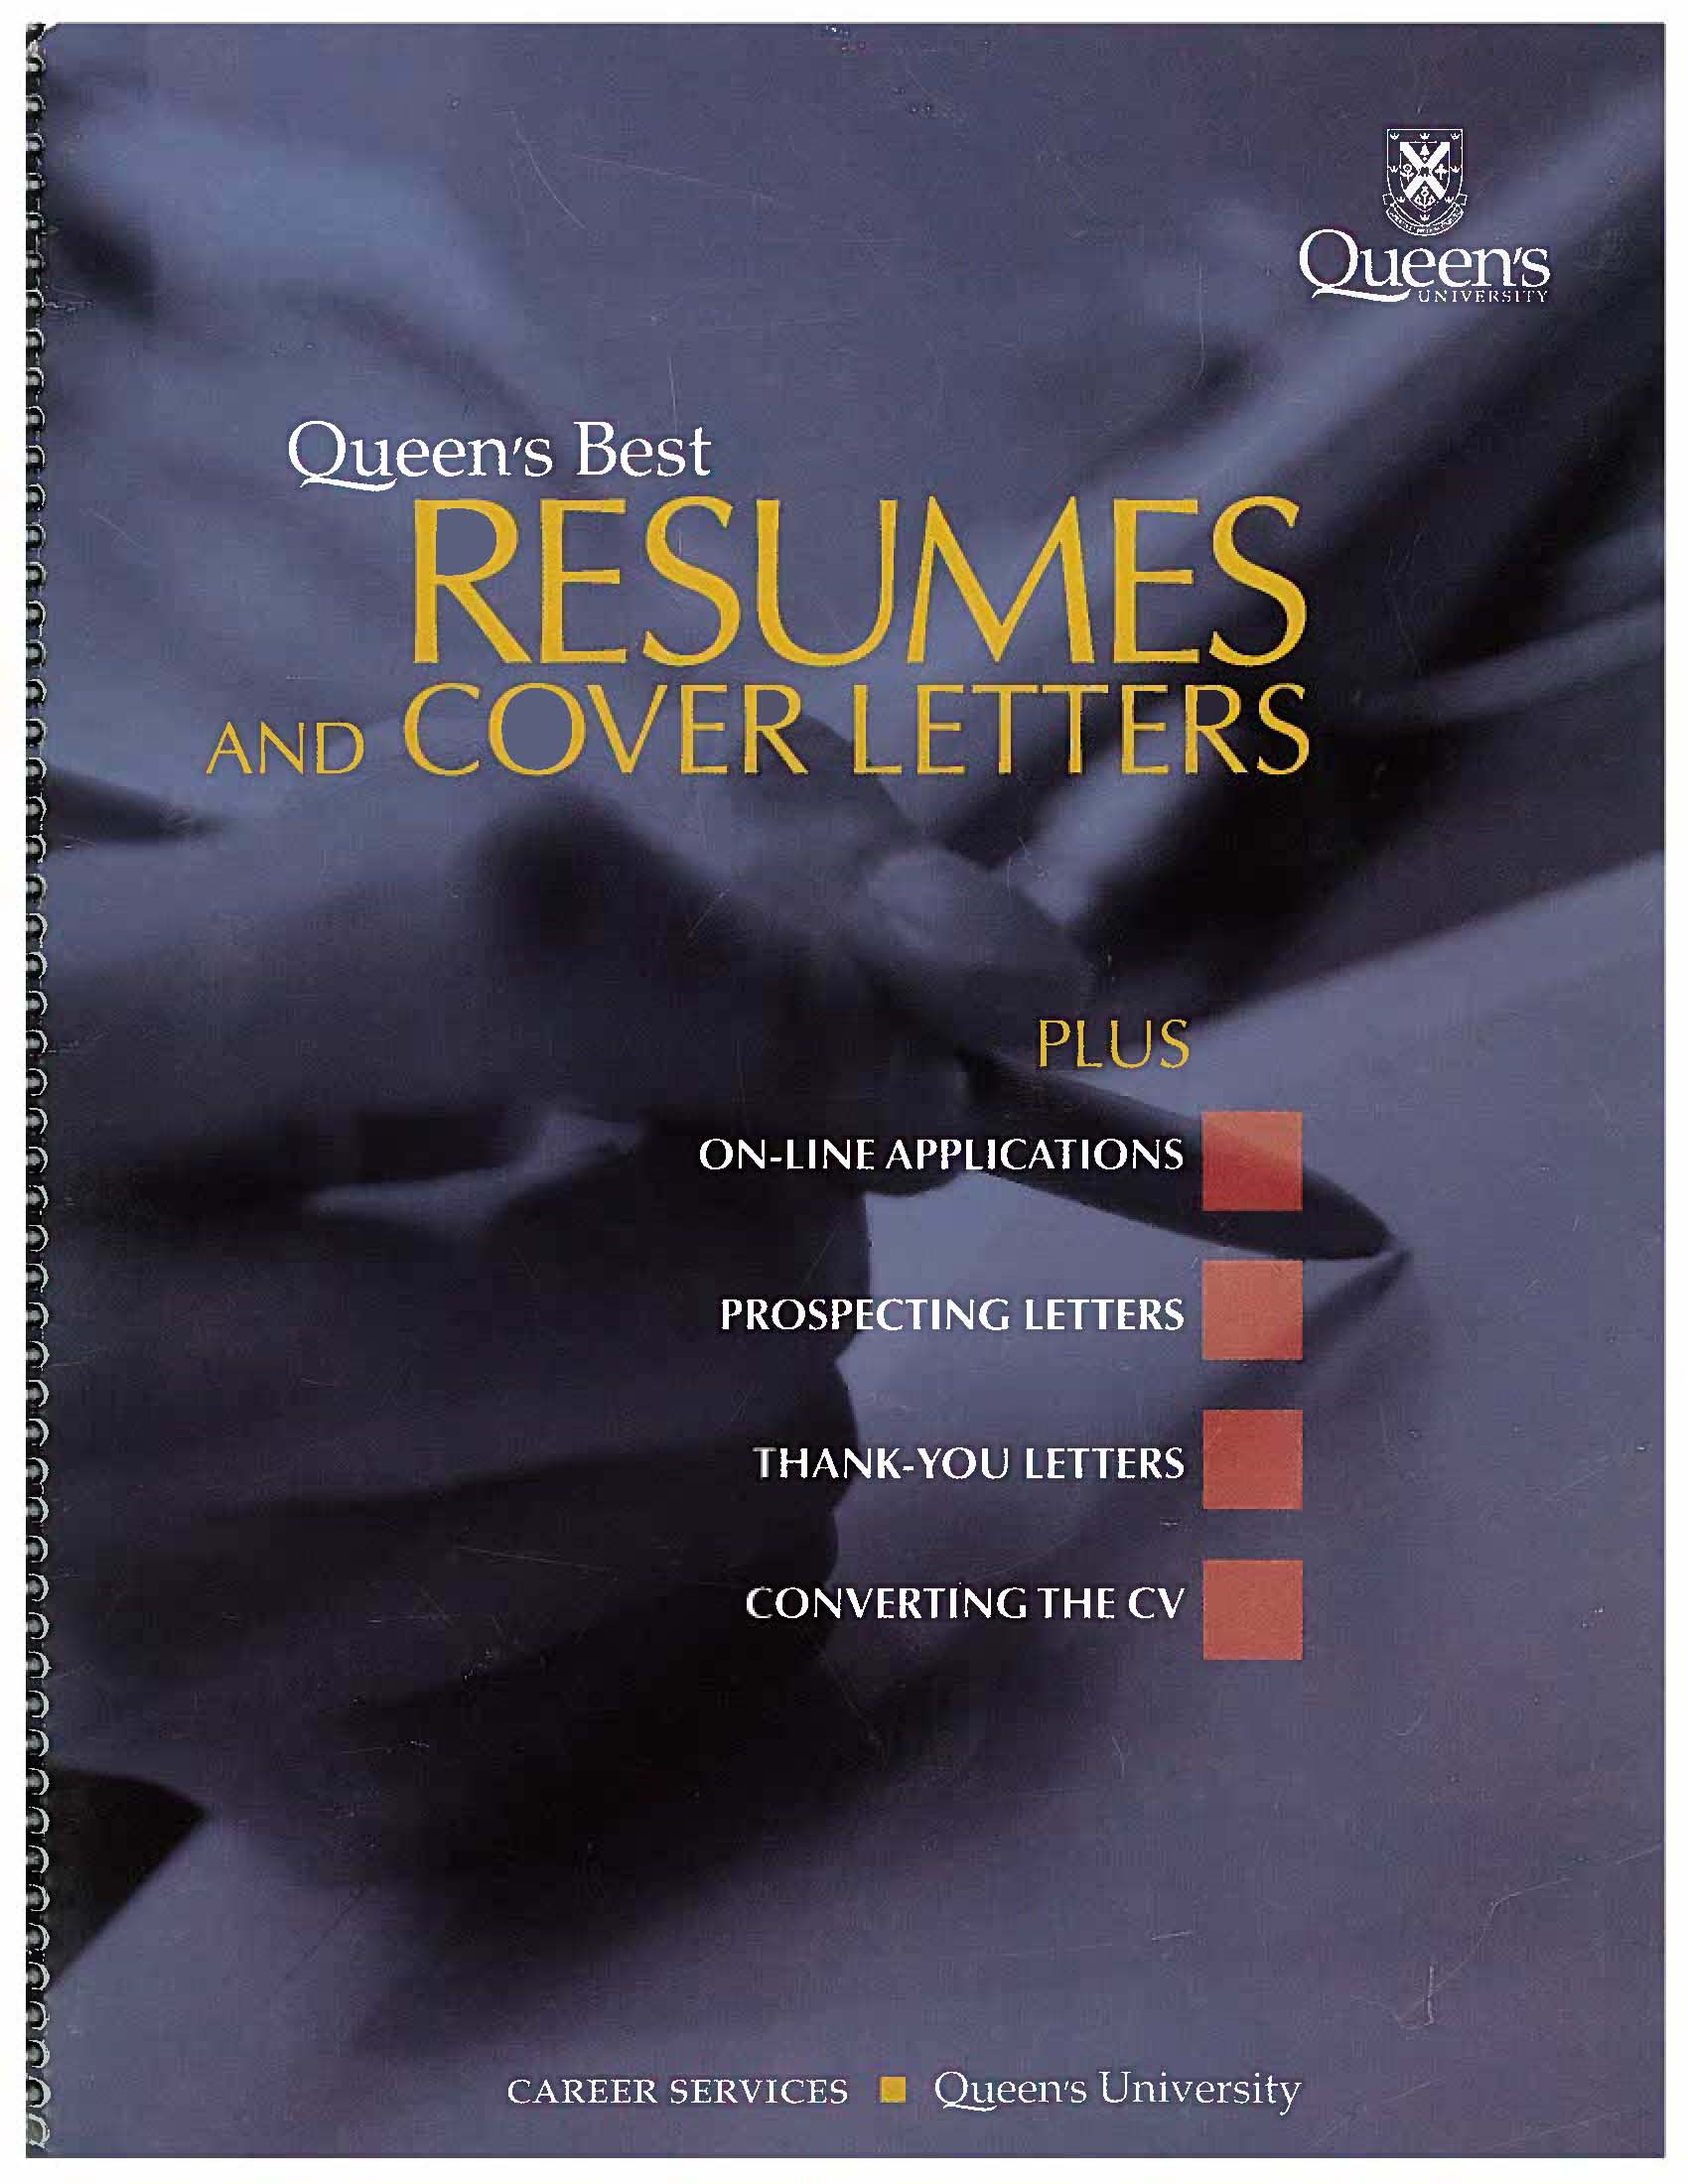 Queen's Best Resumes cover